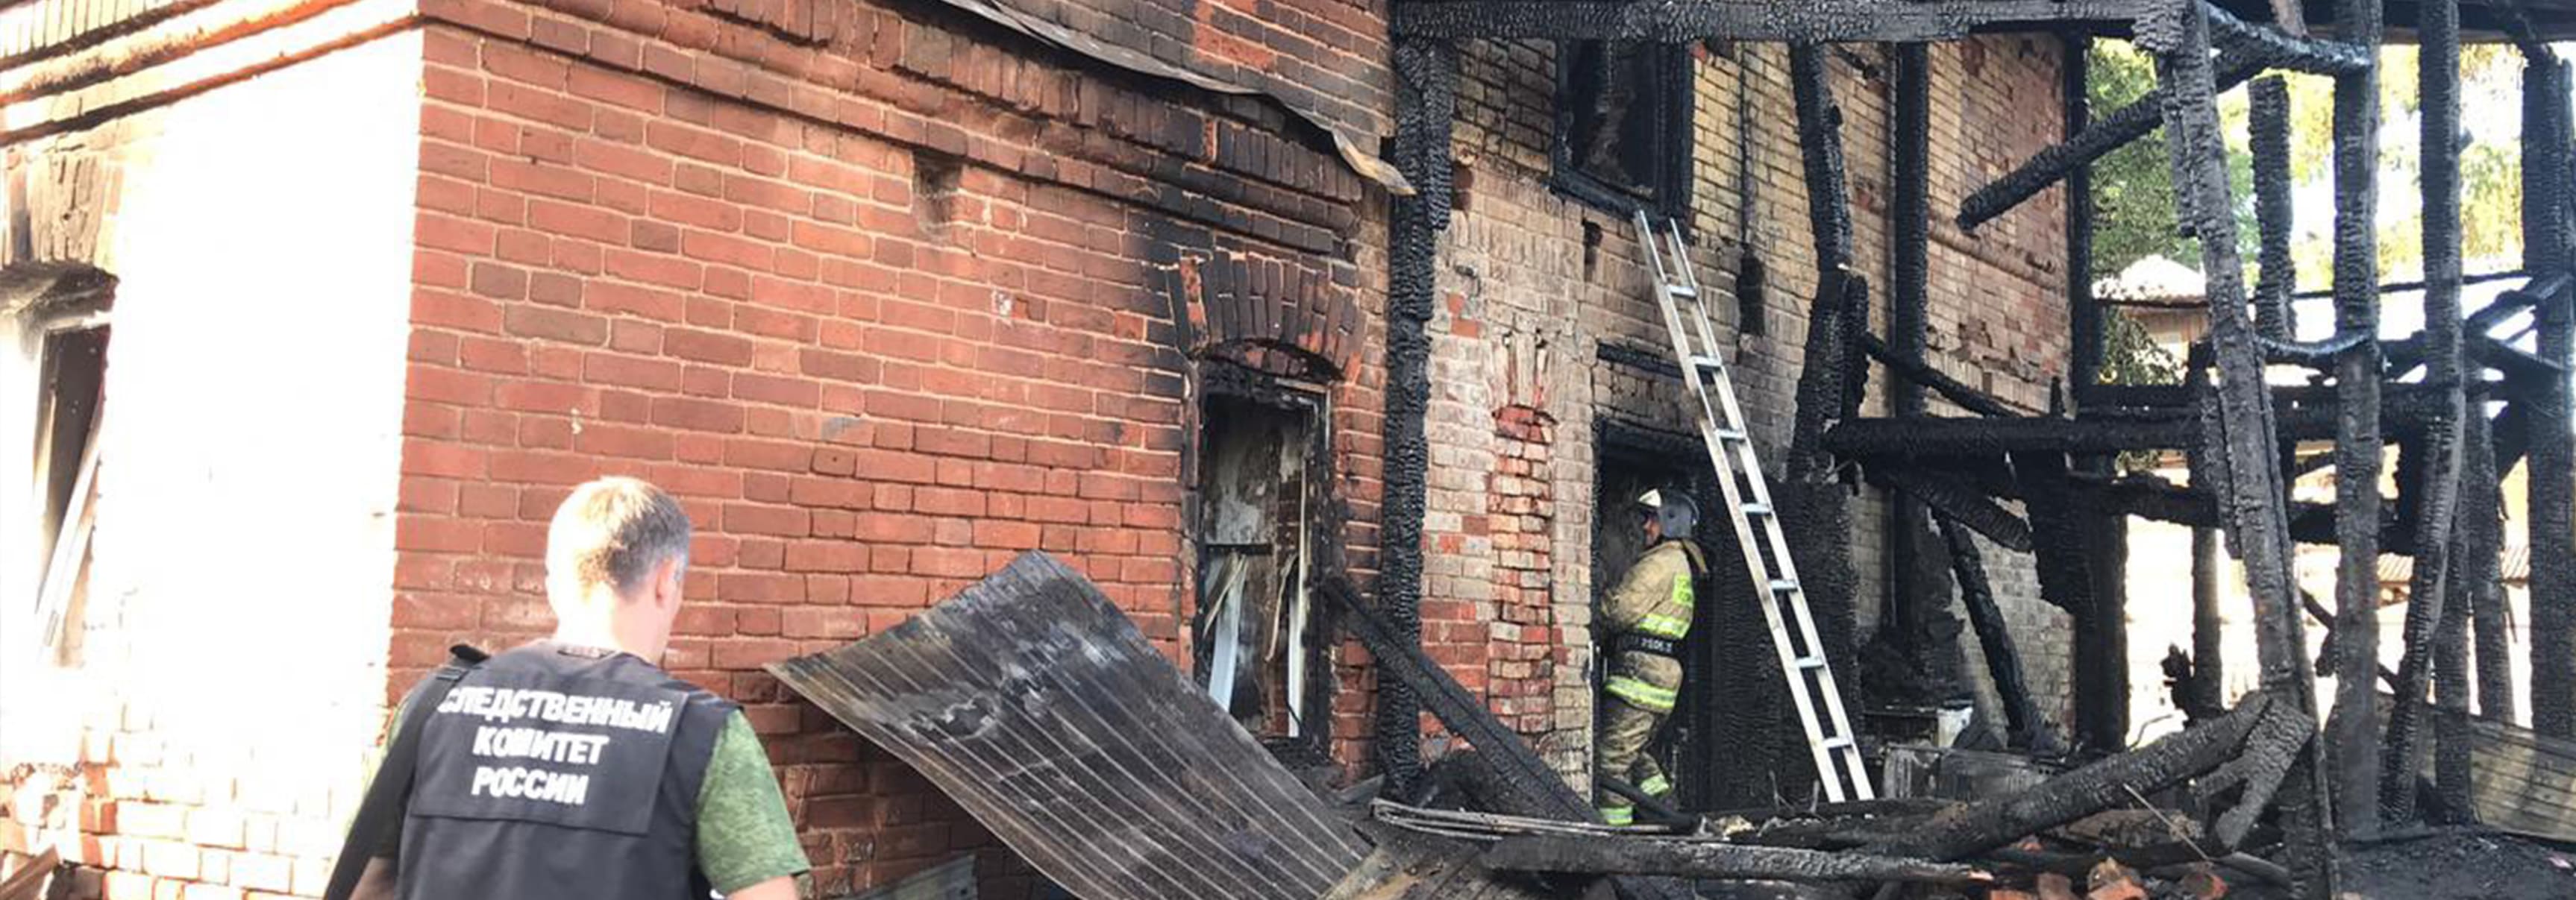 В ночь с 11 на 12 января в Екатеринбурге произошло ЧП. Сильный пожар в жилом доме 1980 года постройки унес жизни нескольких человек.